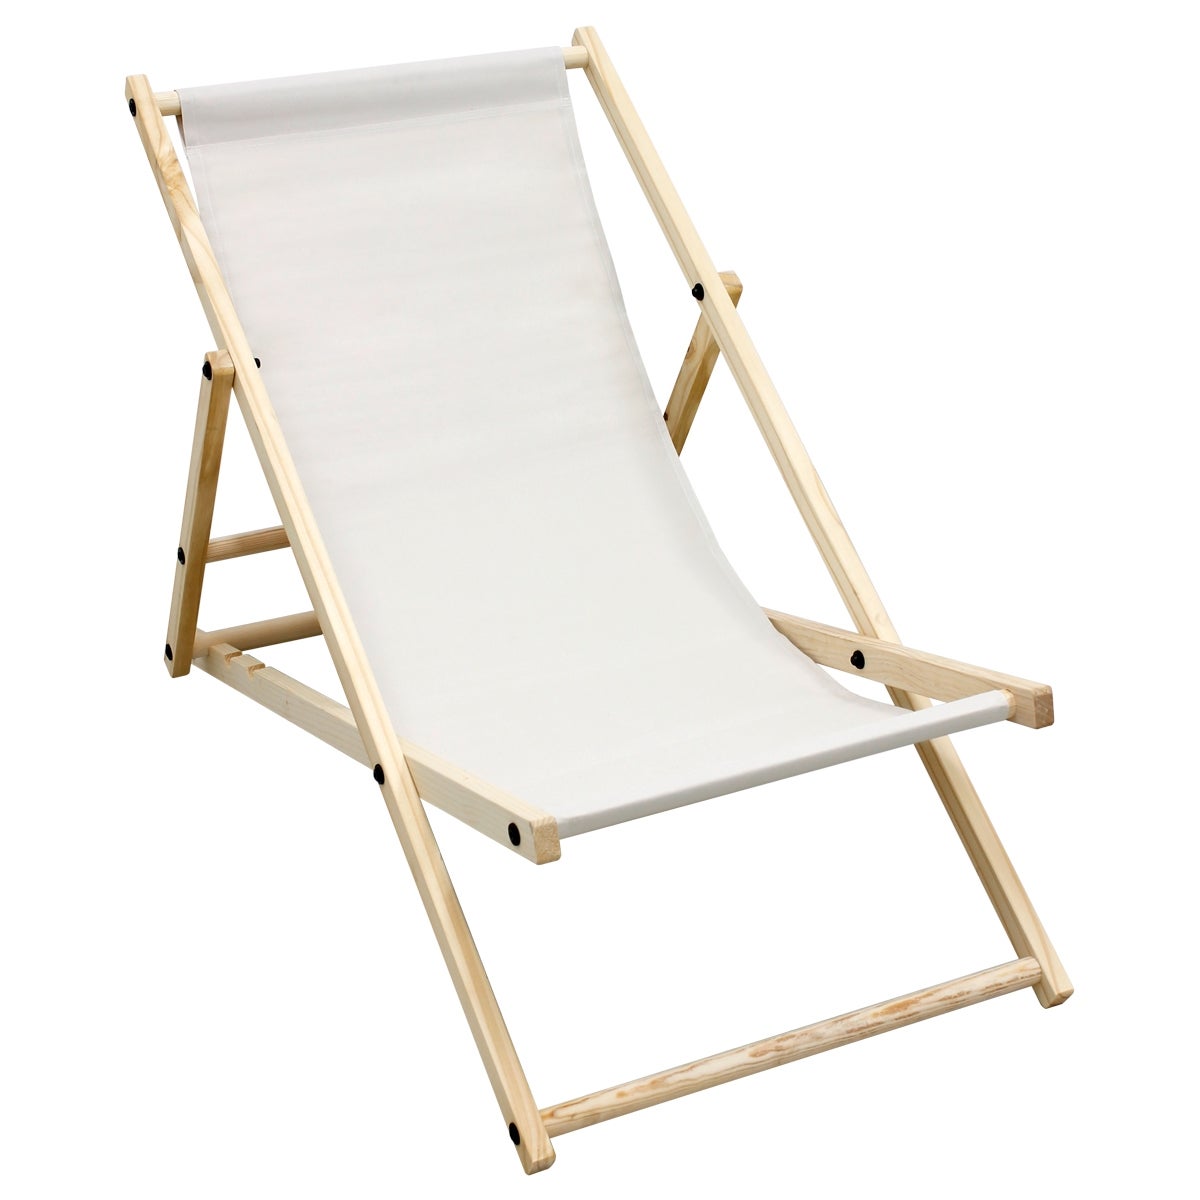 ECD Germany Liegestuhl klappbar aus Holz - 3 Liegepositionen - bis 120 kg - Beige - Sonnenliege Gartenliege Relaxliege Strandliege Liege Strandstuhl Klappliegestuhl Holzklappstuhl Strandliegestuhl